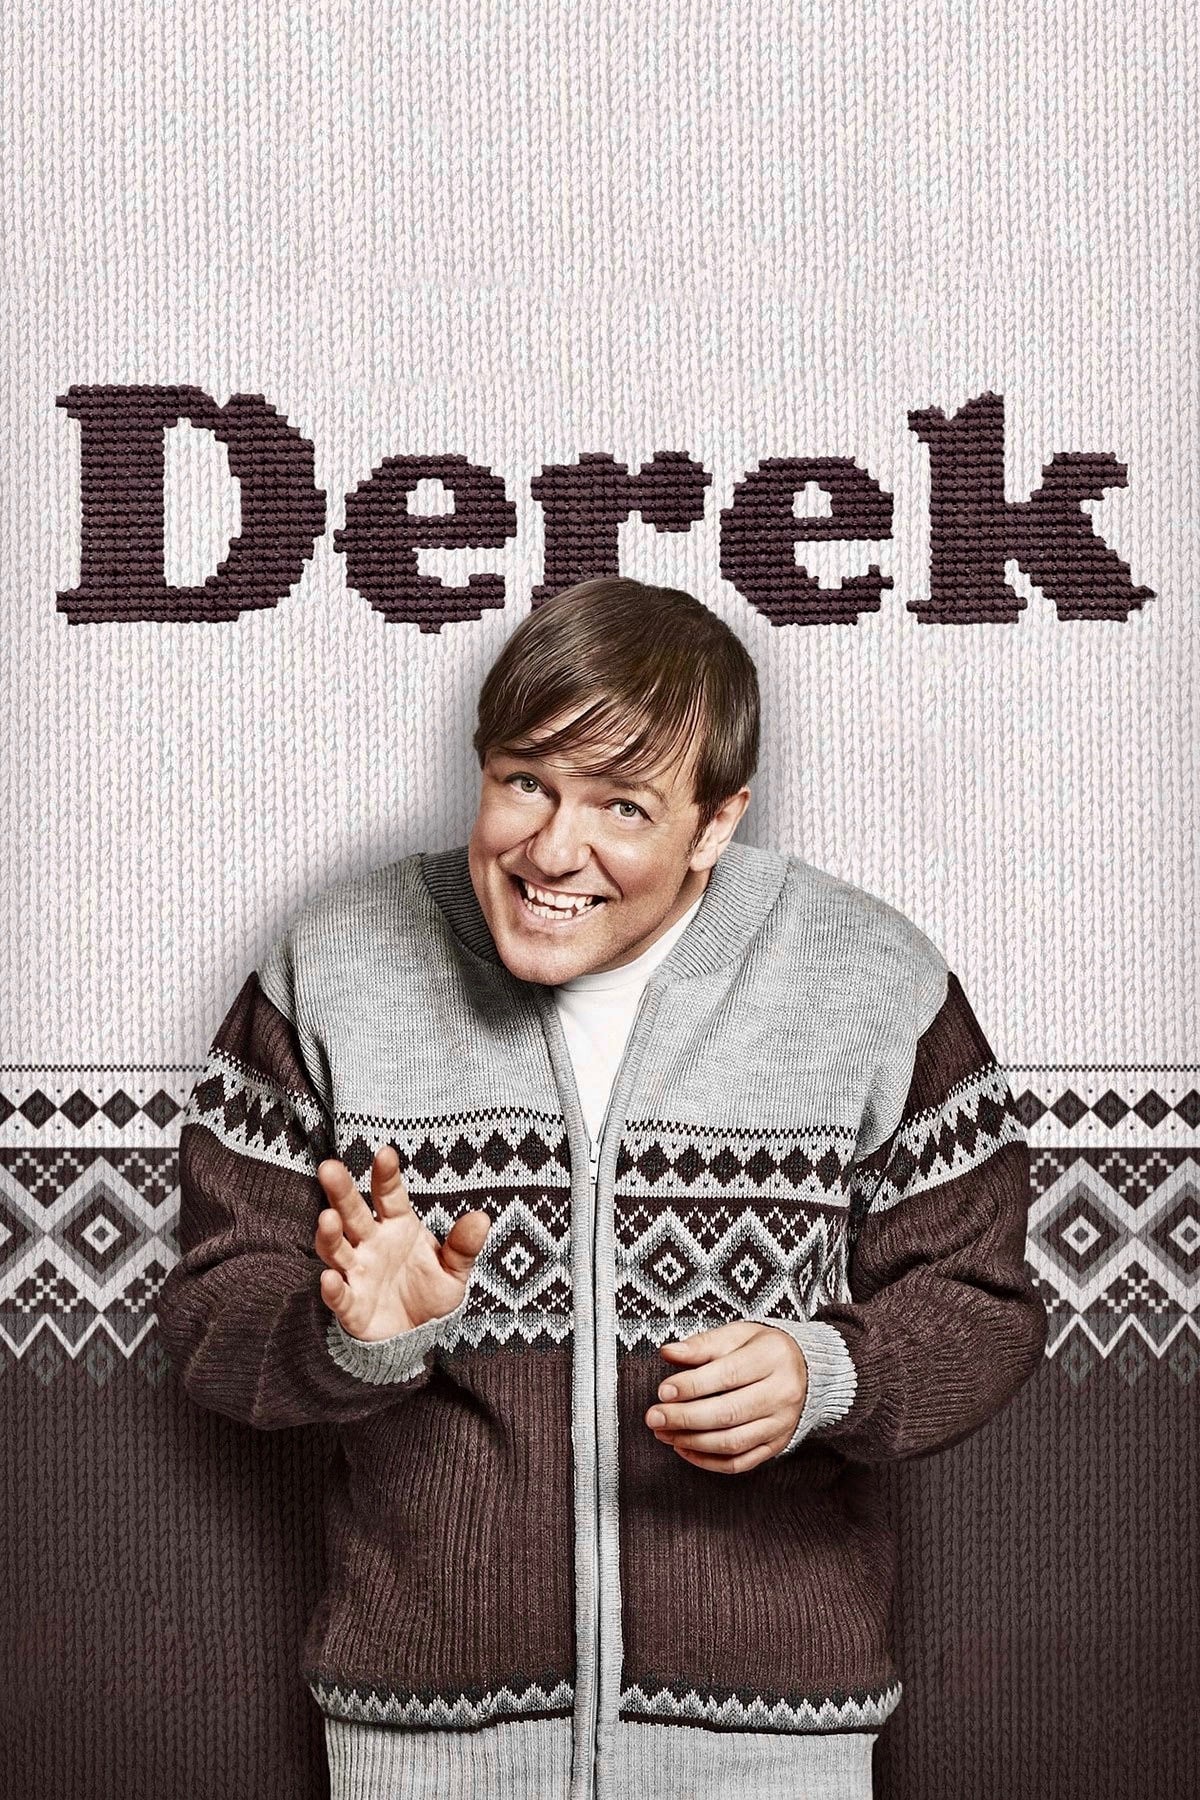 Derek TV Shows About Elderly